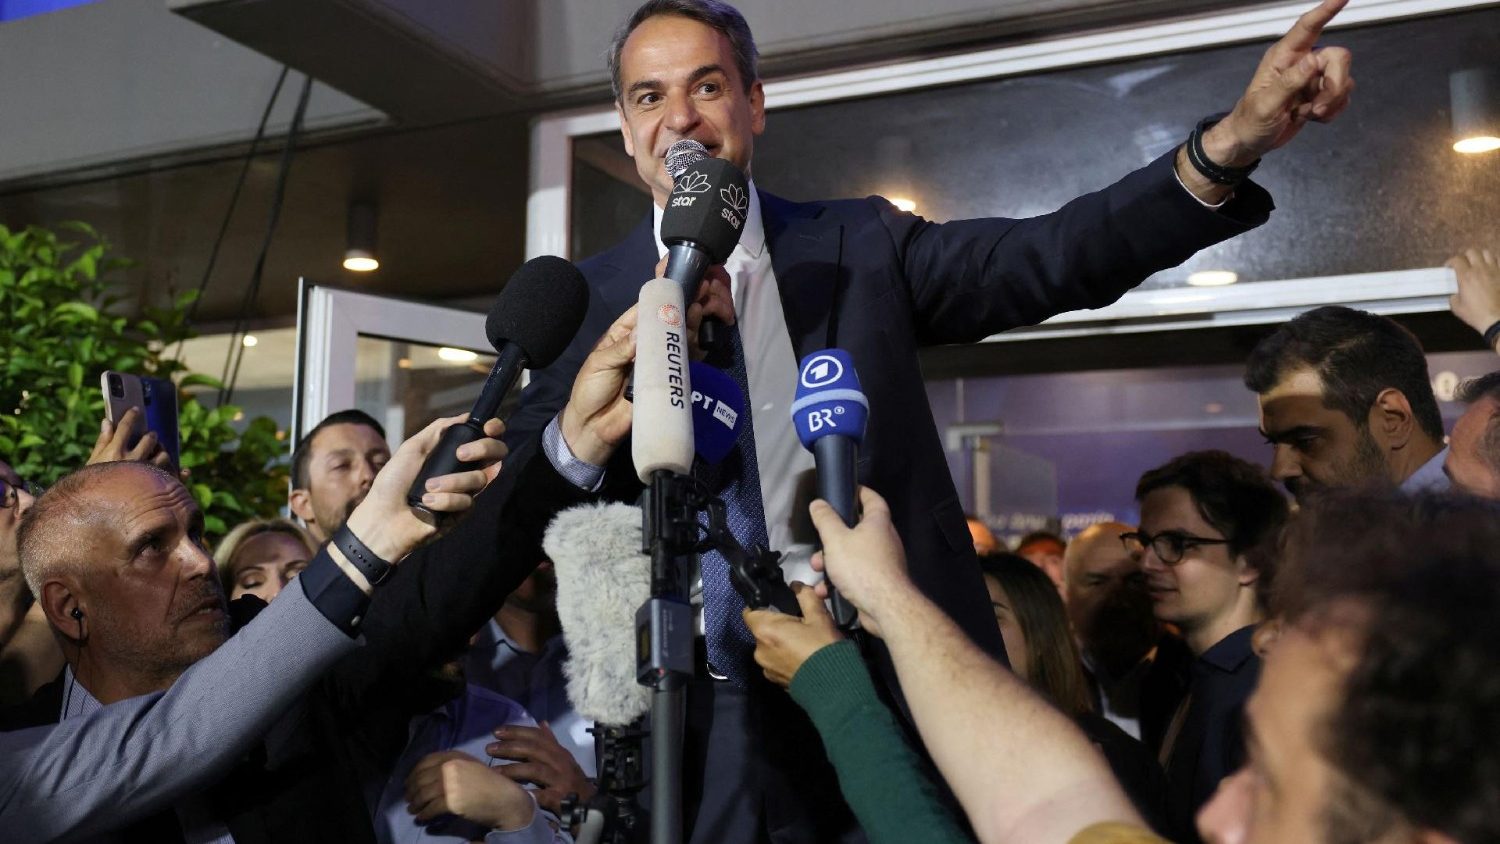 Εκλογές στην Ελλάδα, επιβεβαίωσε το συντηρητικό κόμμα υπό τον πρωθυπουργό Μητσοτάκη